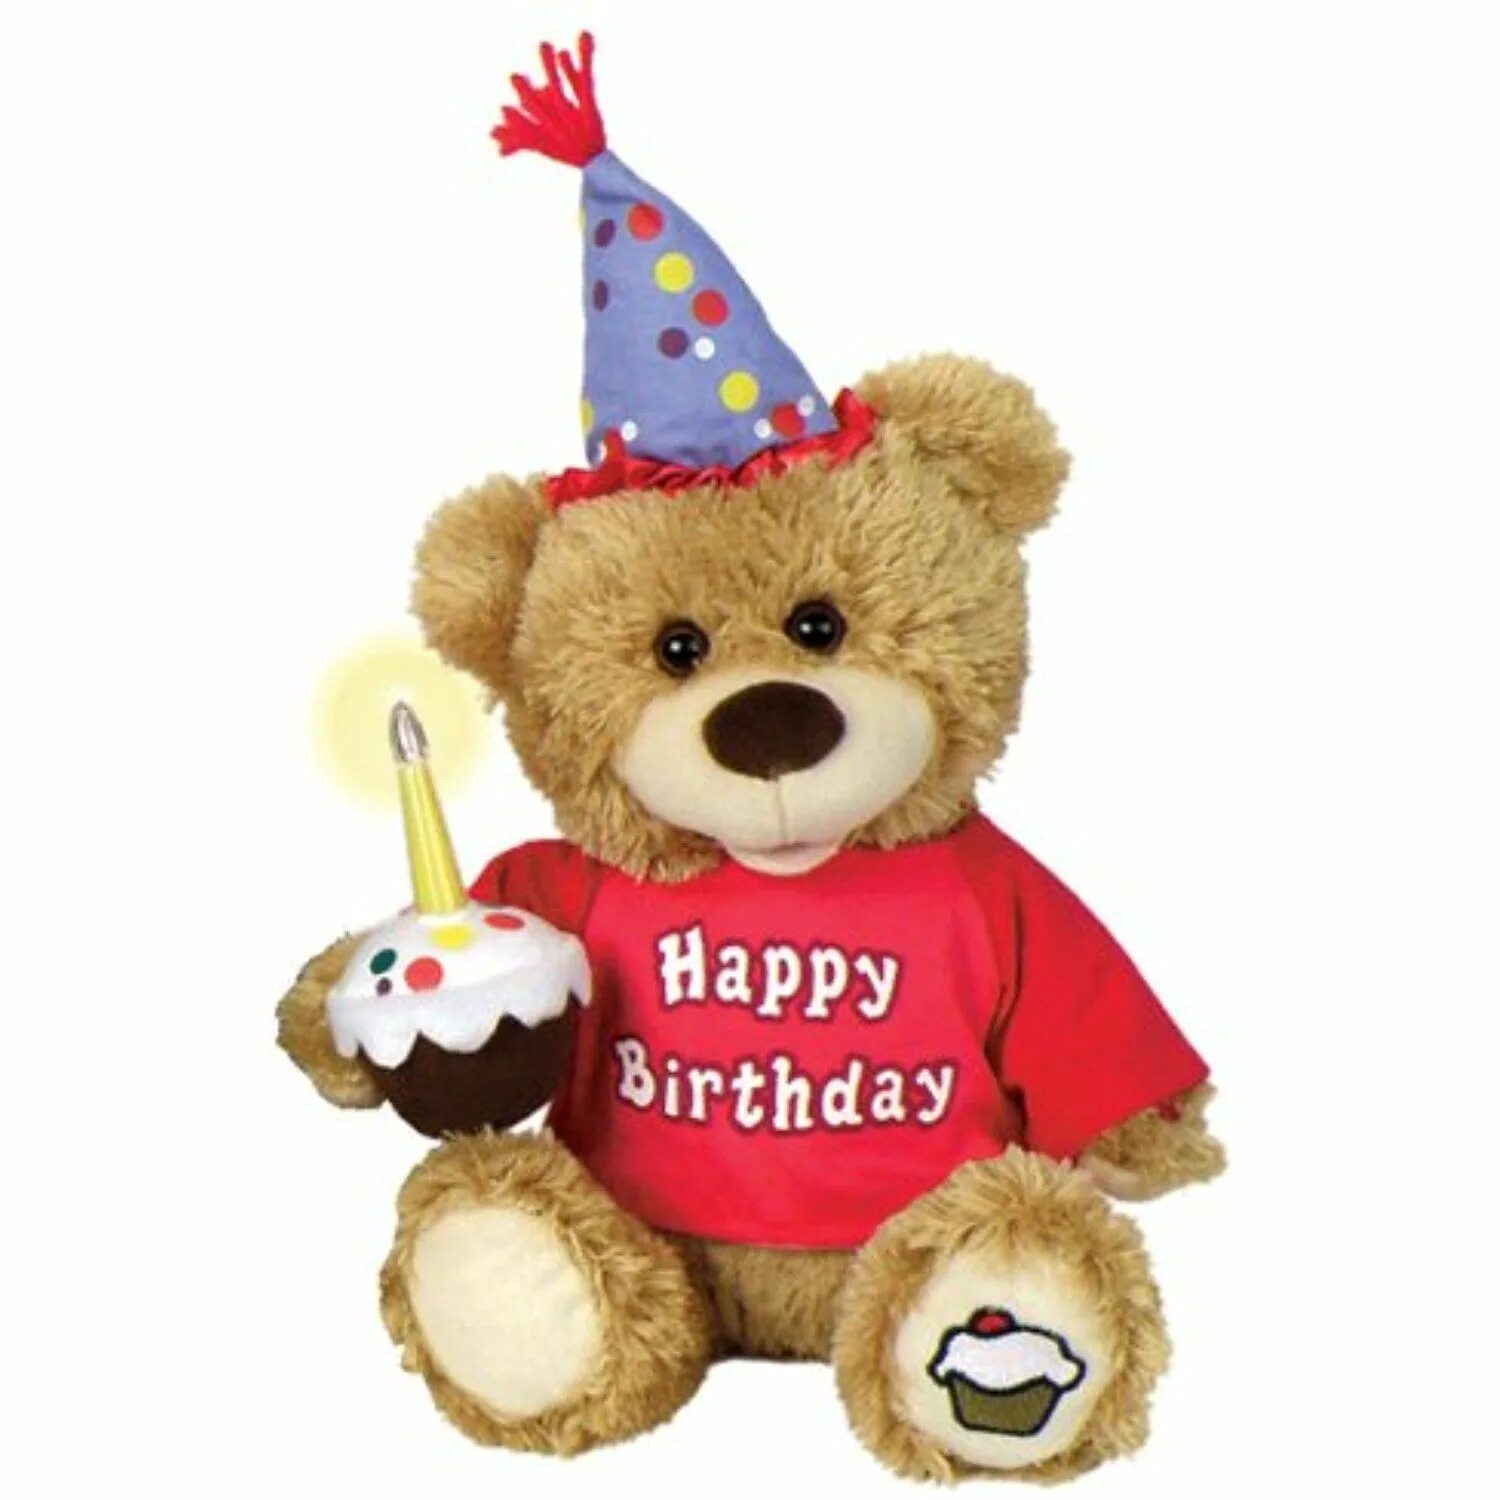 Заказать мишку для поздравления. Мягкие игрушки на день рождения. Мягкая игрушка «мишка». С днем рождения мишка. Плюшевые мышки на день рождения.